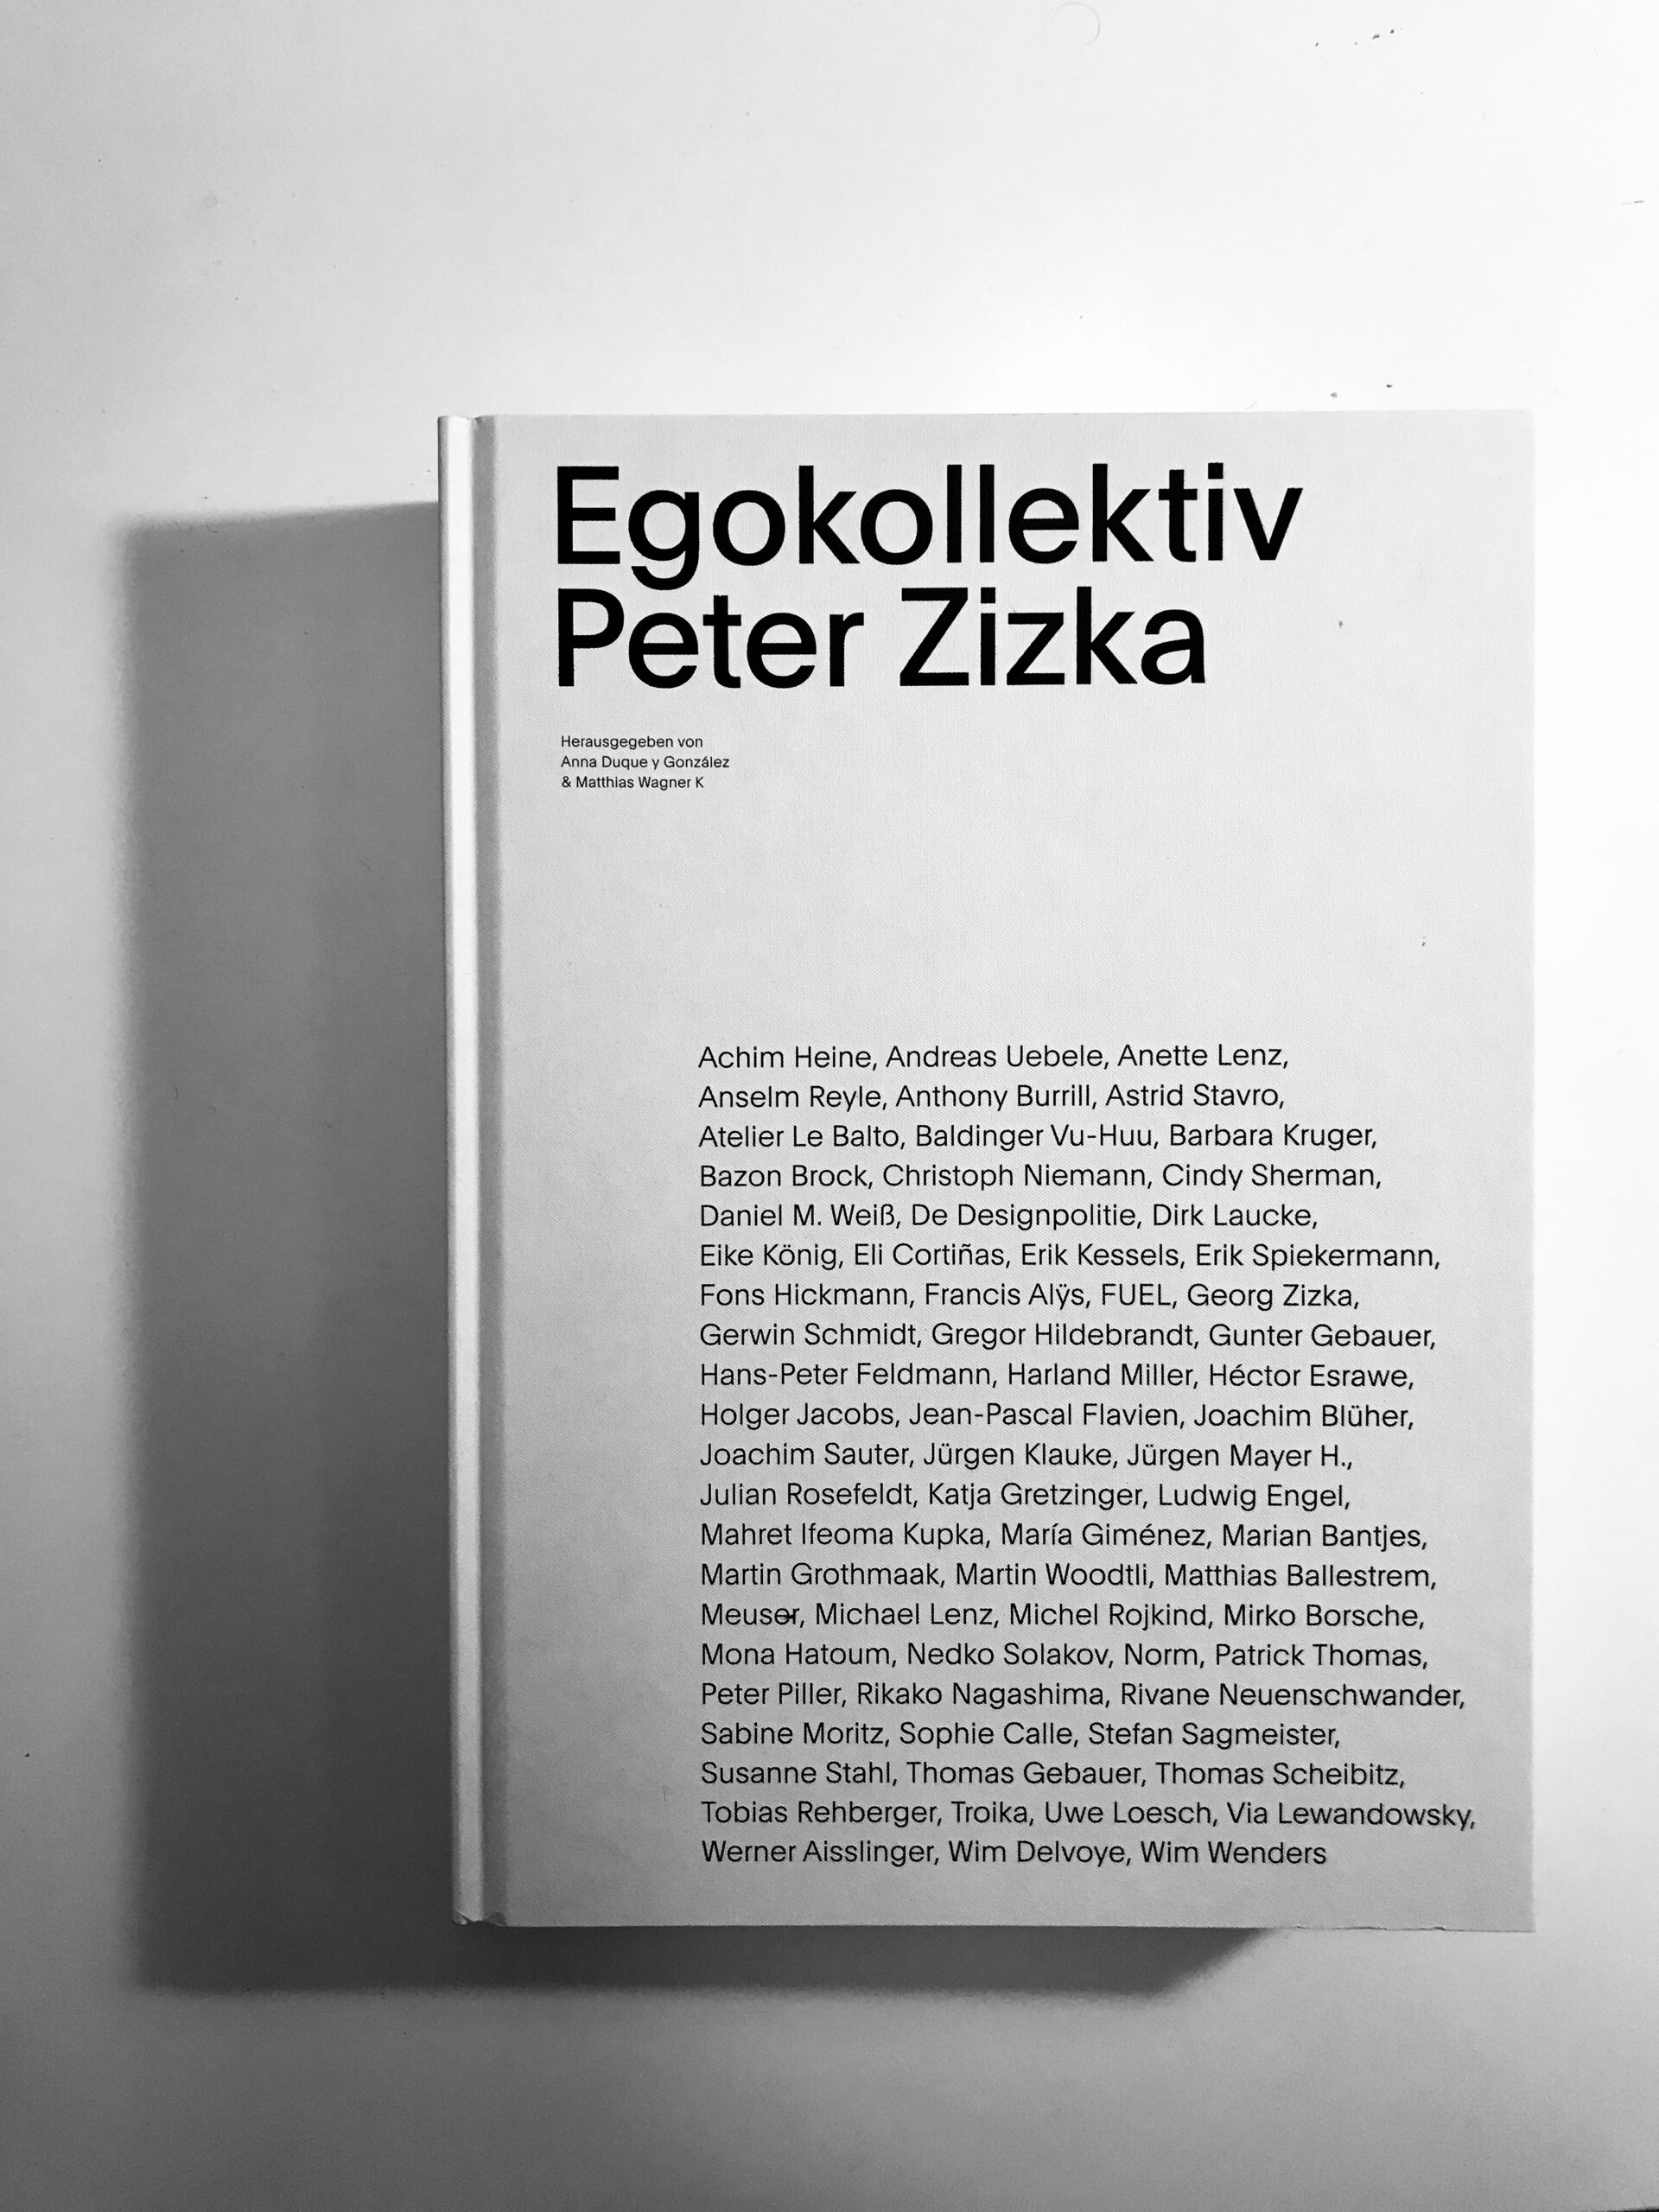 Essay: EgokollektivPeter Zizka